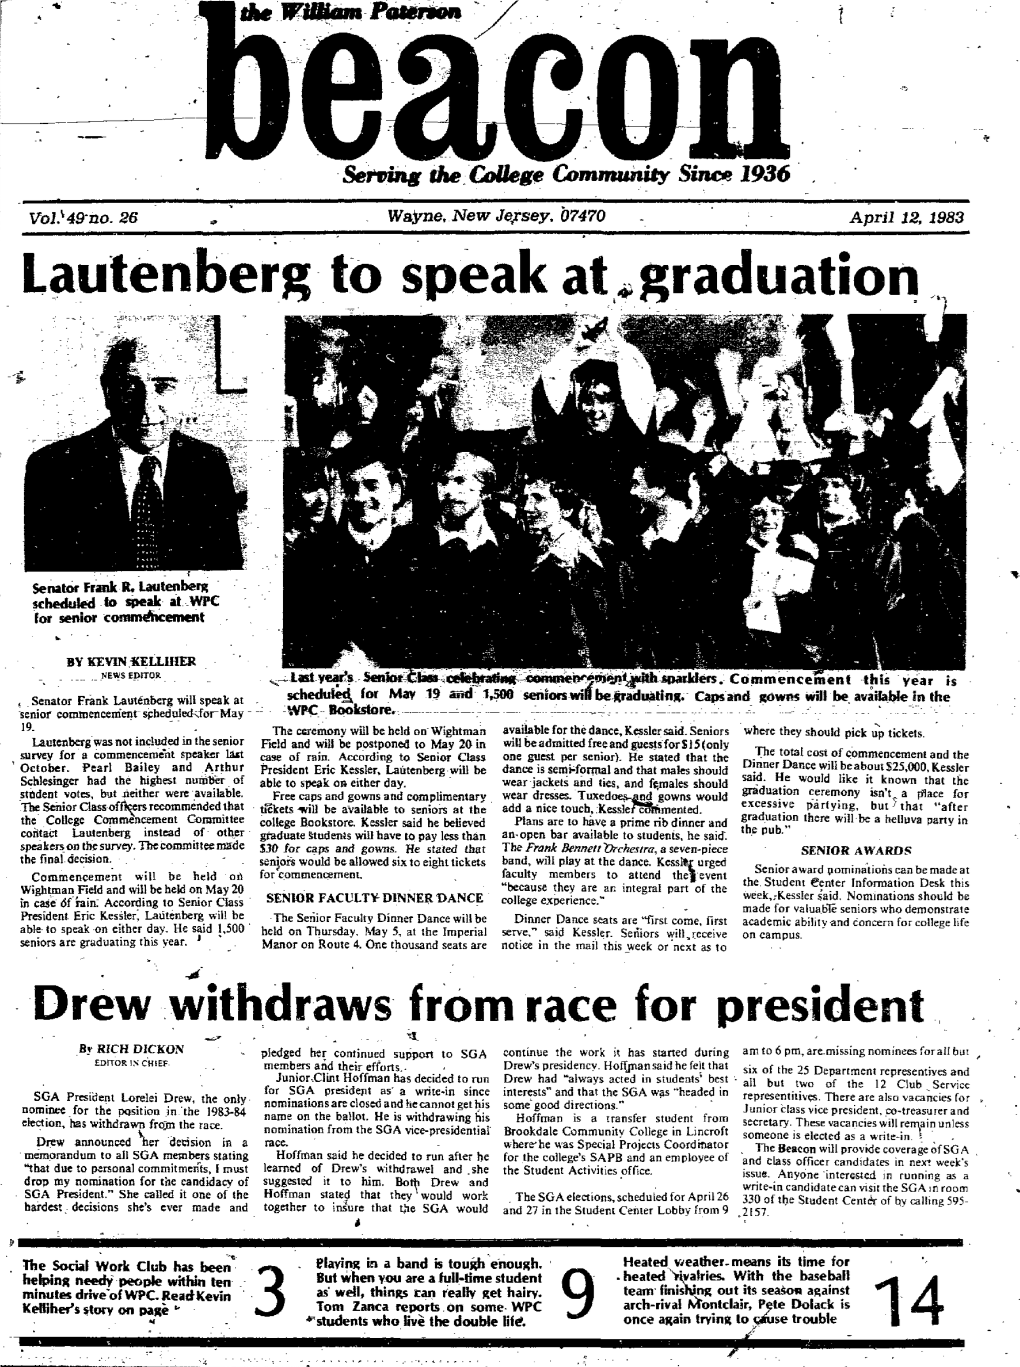 Lautenberg to Speak at Graduation